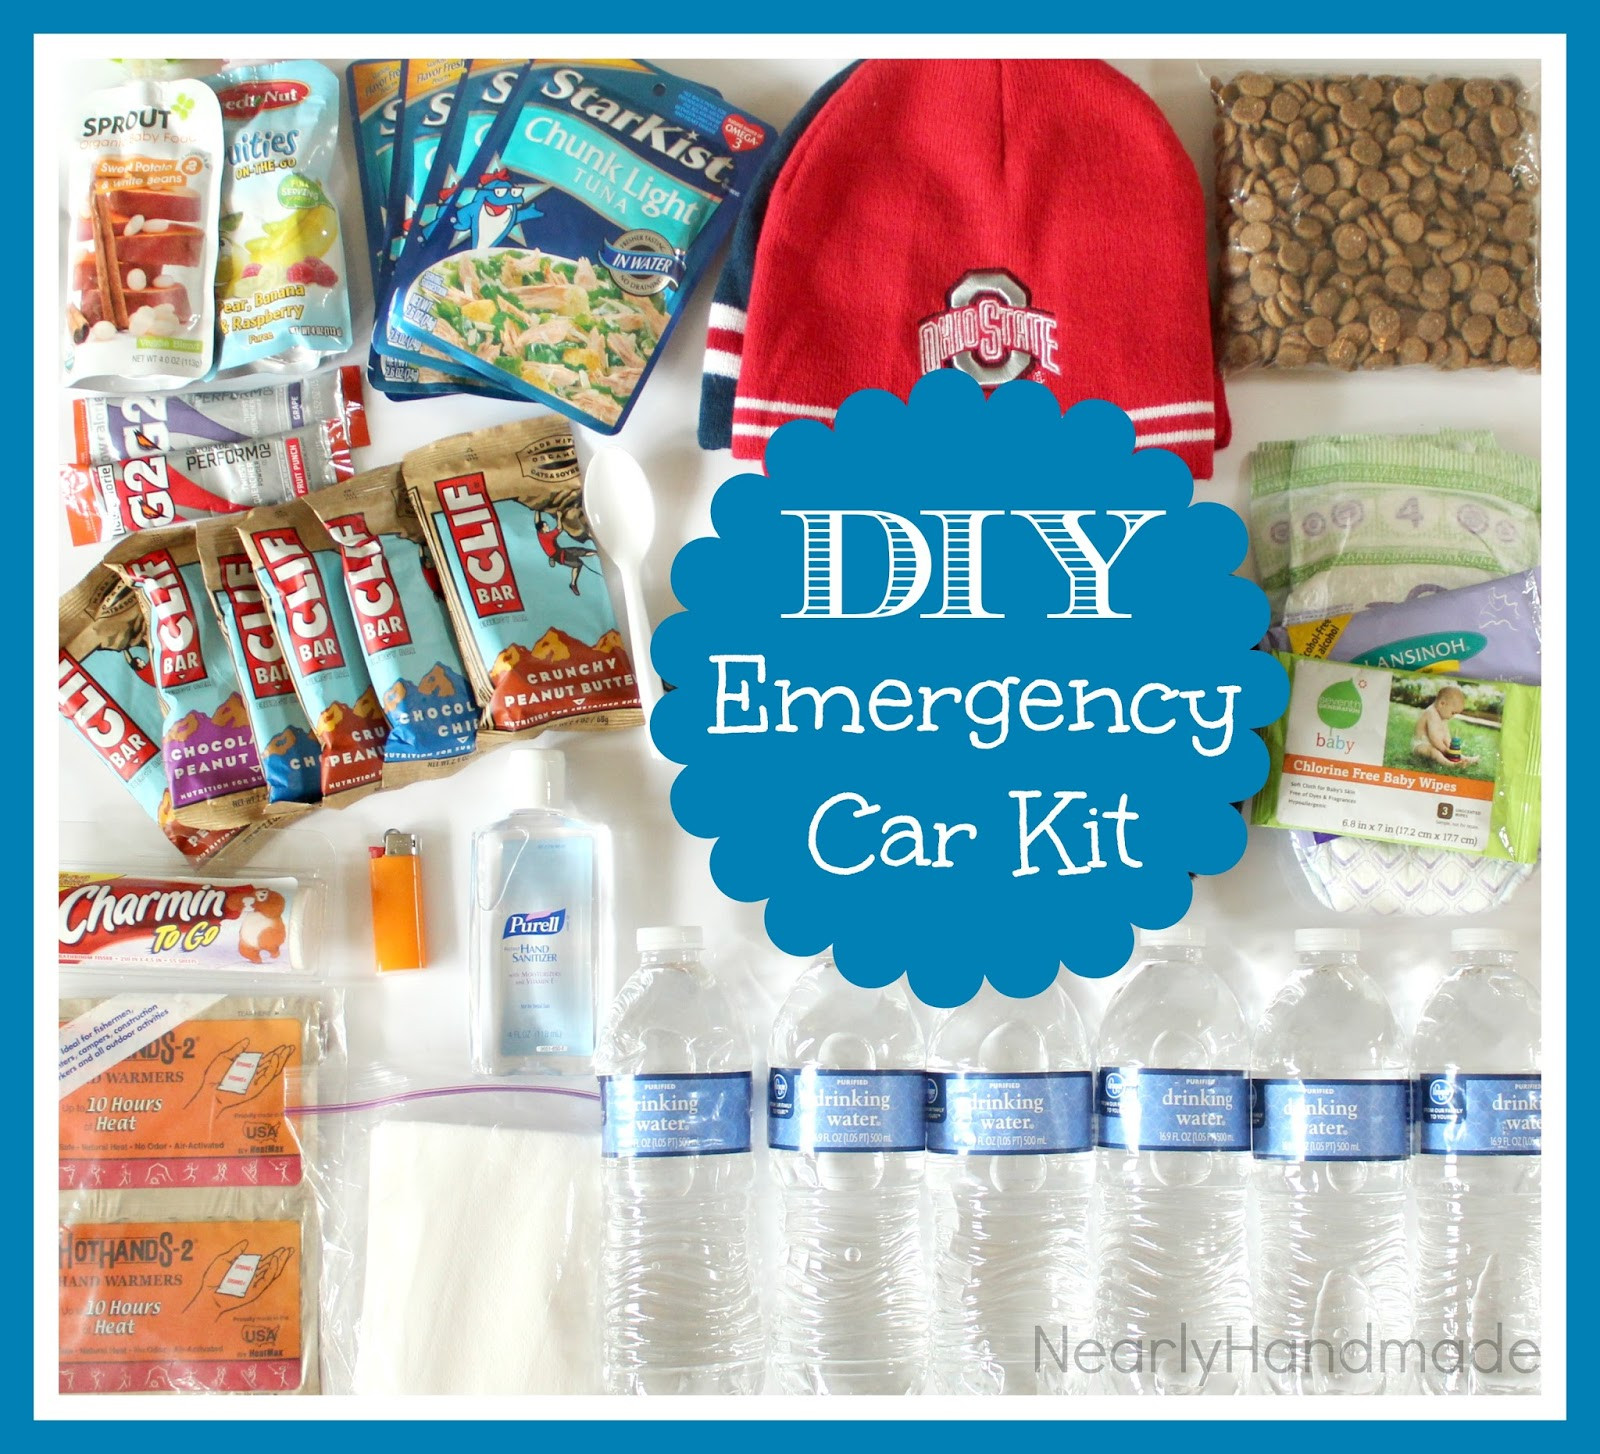 Emergency Car Kit DIY
 Nearly Handmade DIY Emergency Car Kit